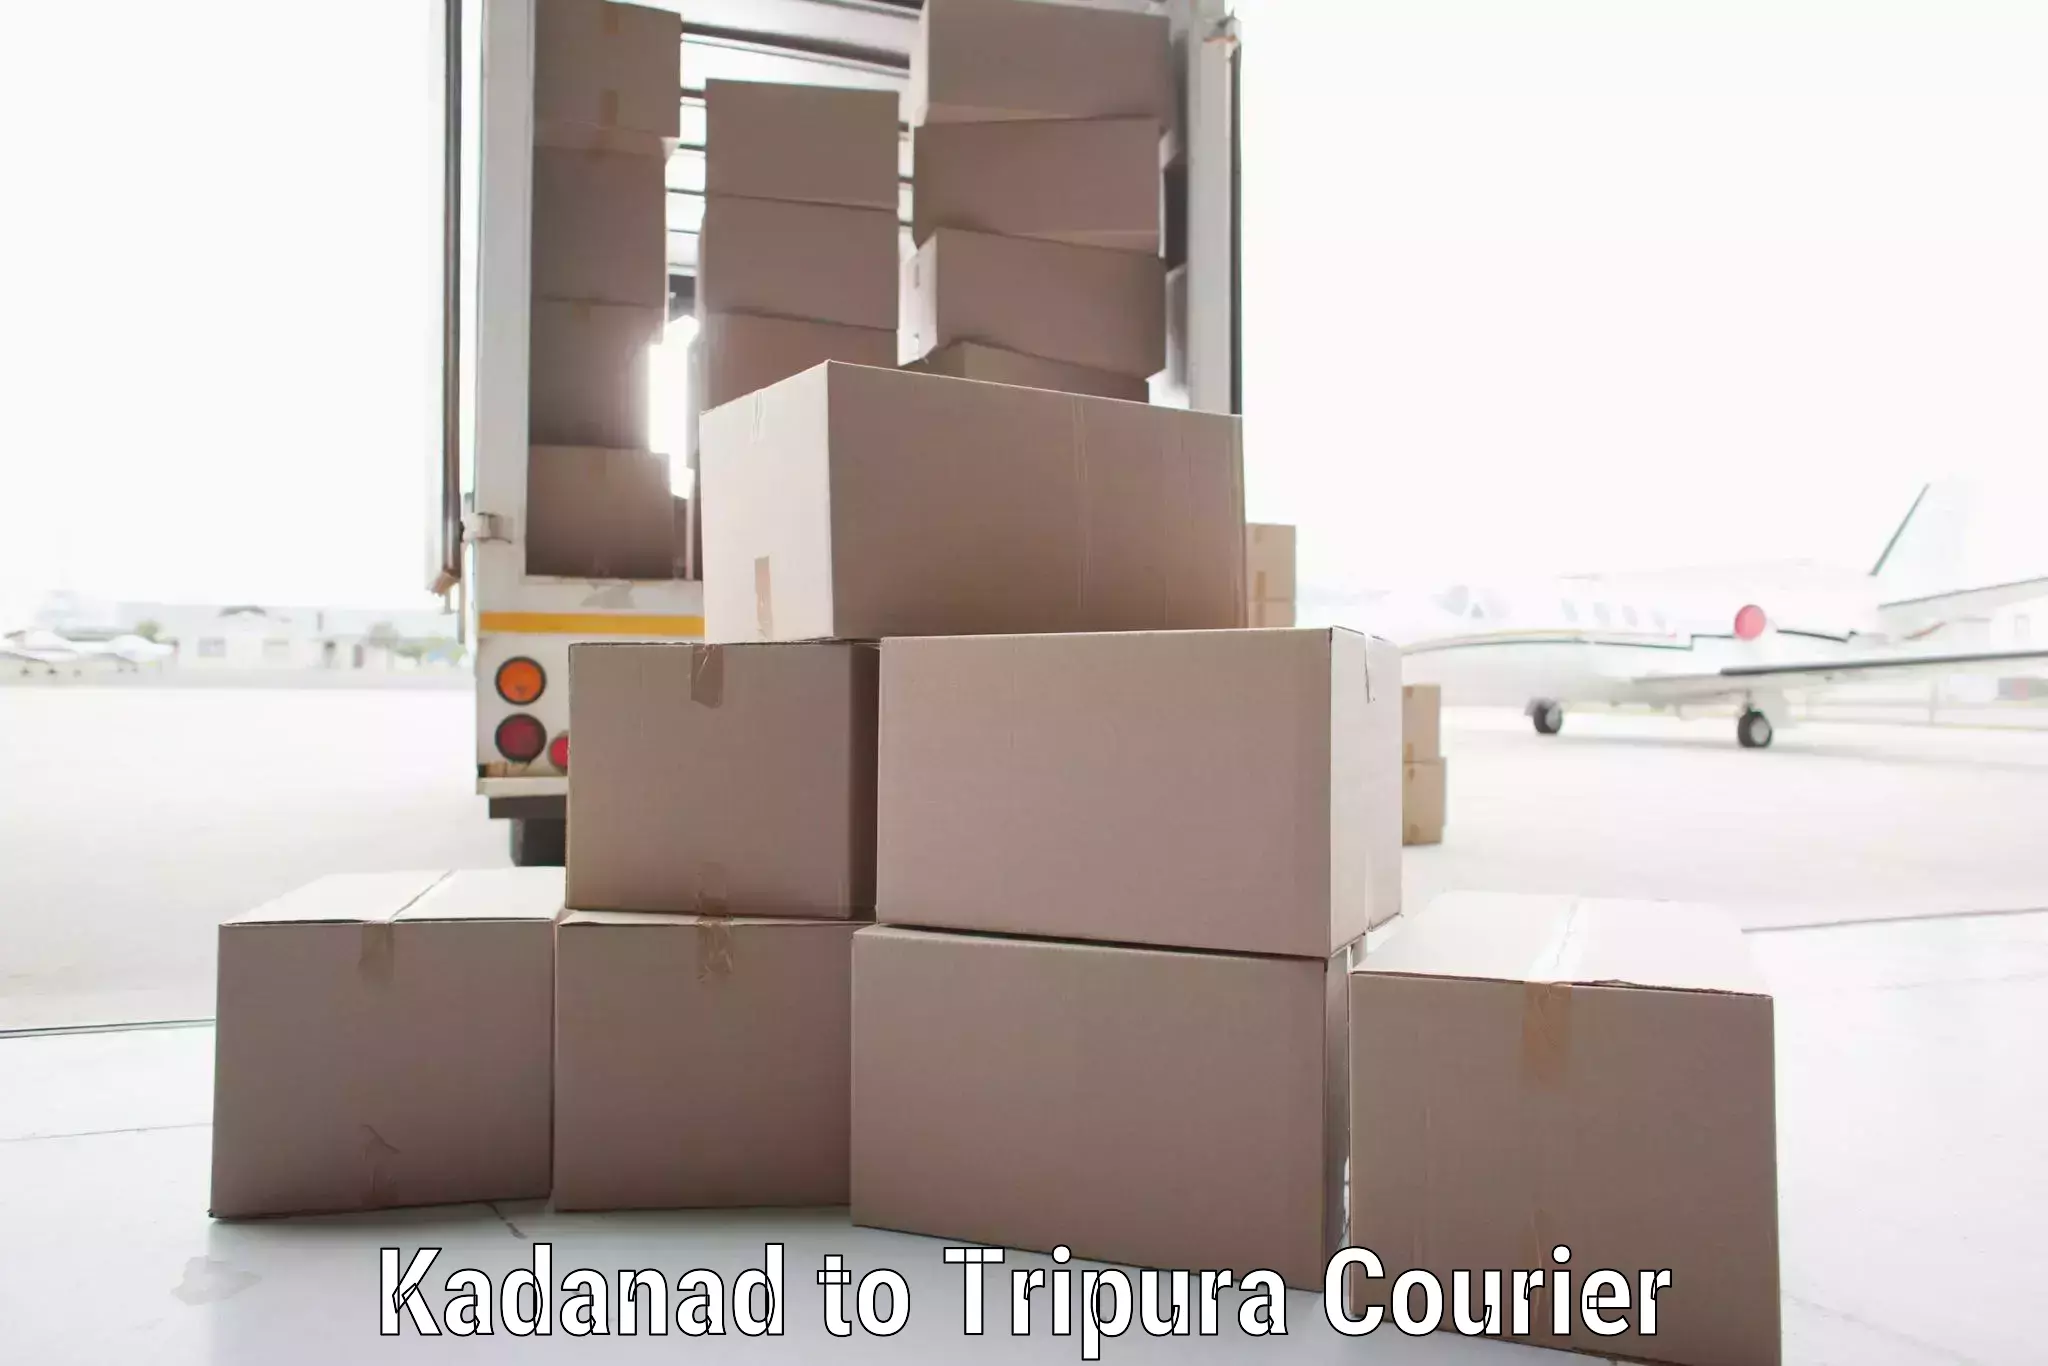 Speedy delivery service Kadanad to NIT Agartala